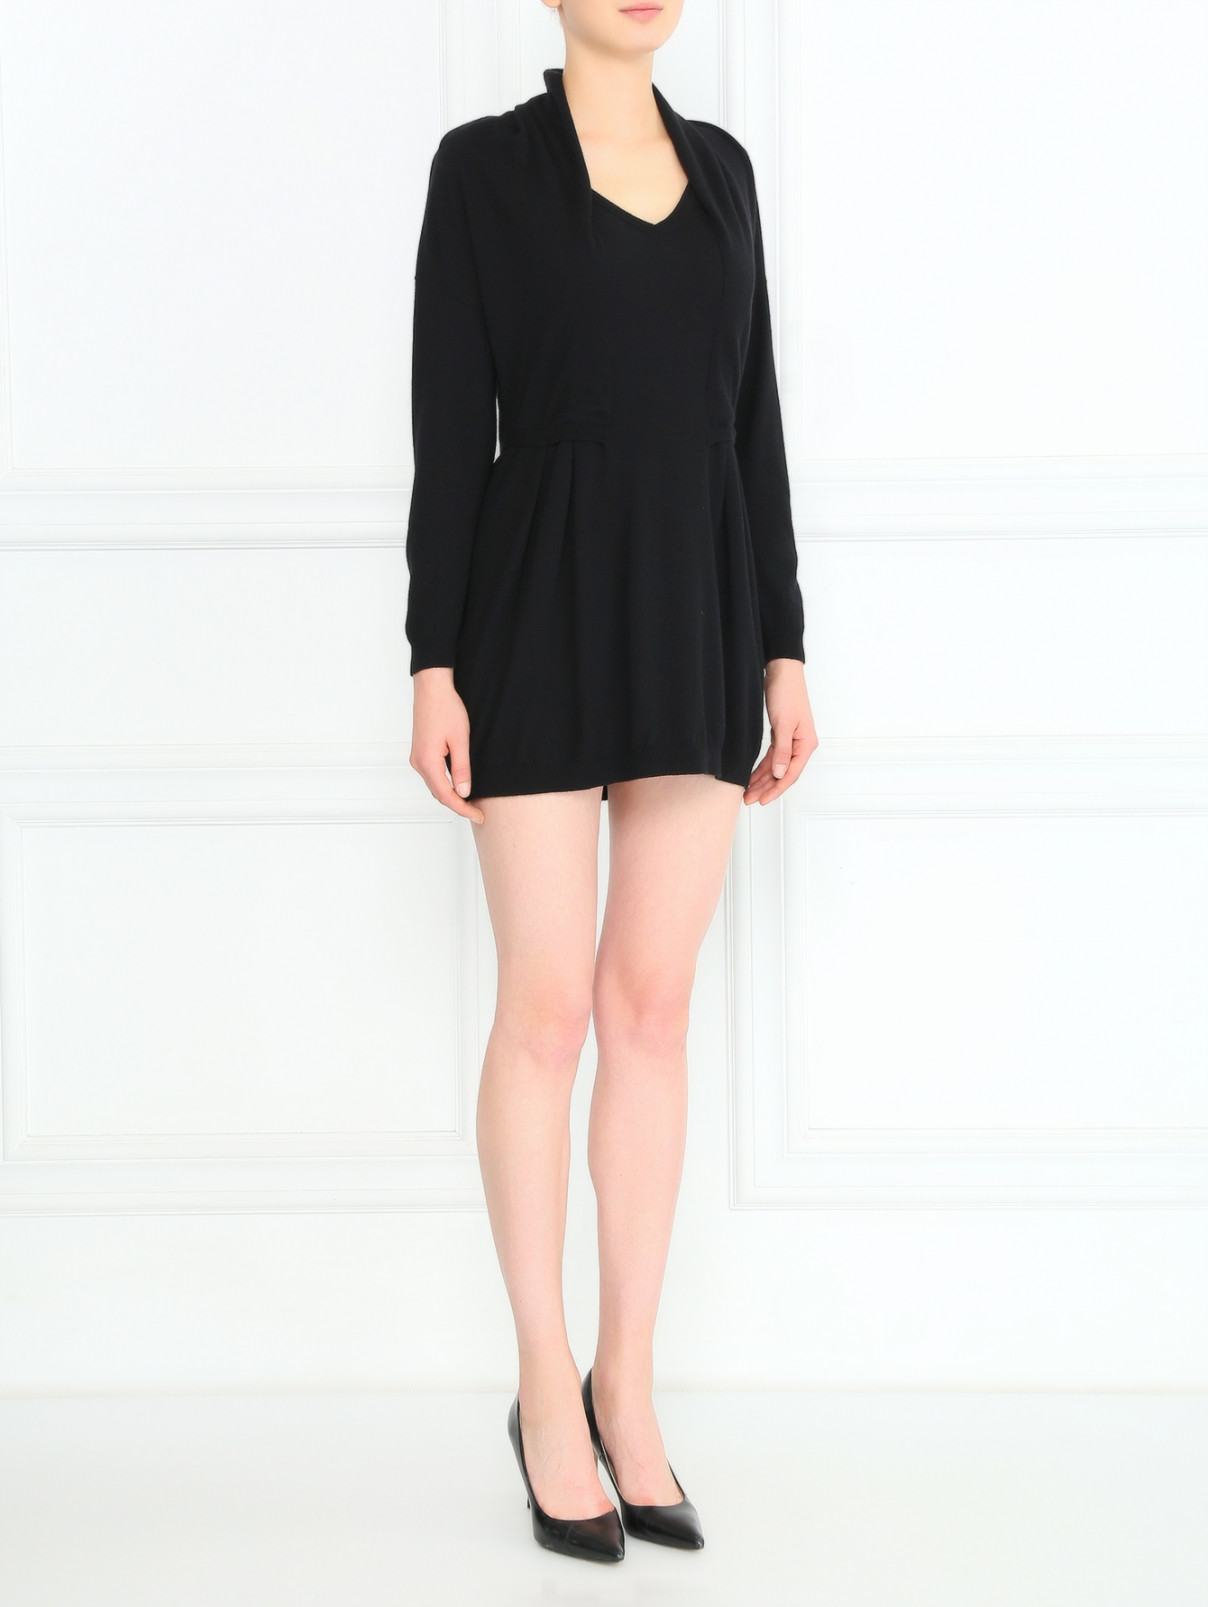 Платье из шерсти и кашемира Moschino  –  Модель Общий вид  – Цвет:  Черный